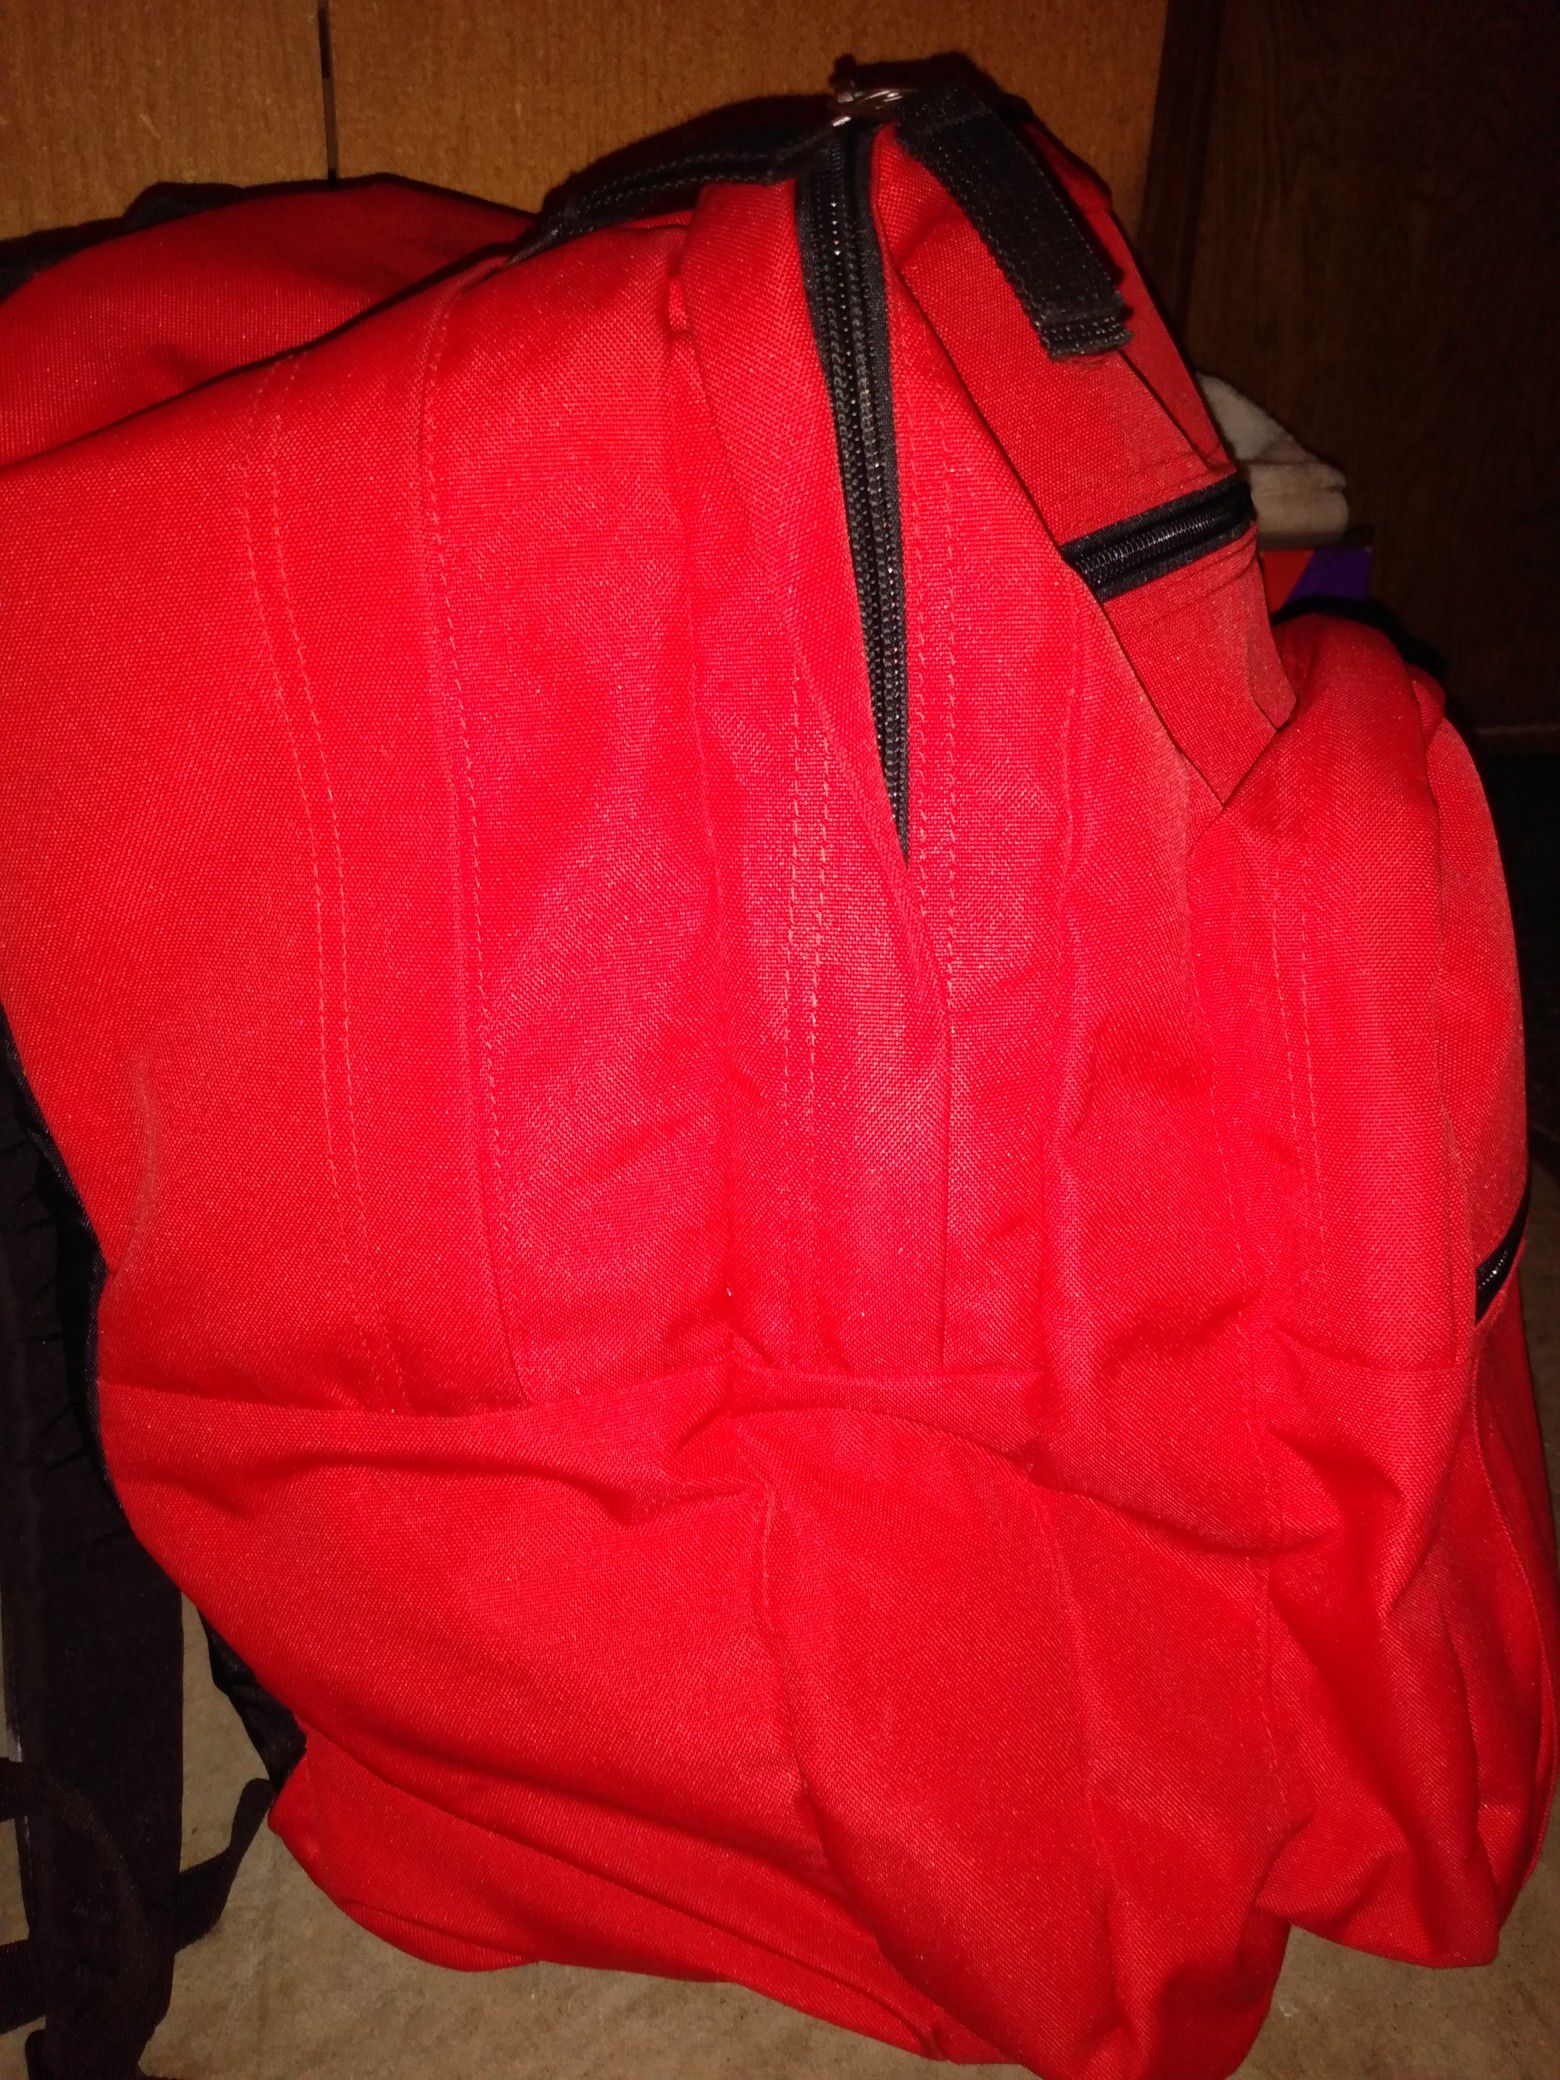 Red Jansport Backpack